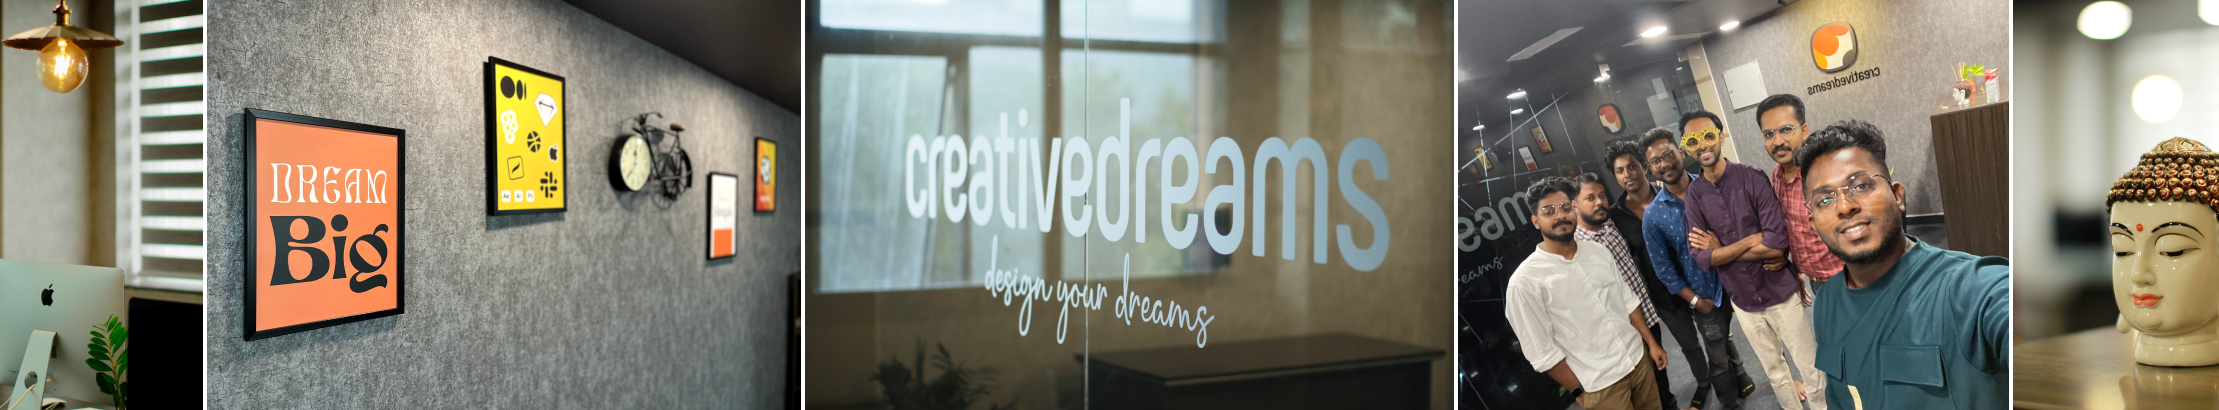 Creative Dreams's profile banner